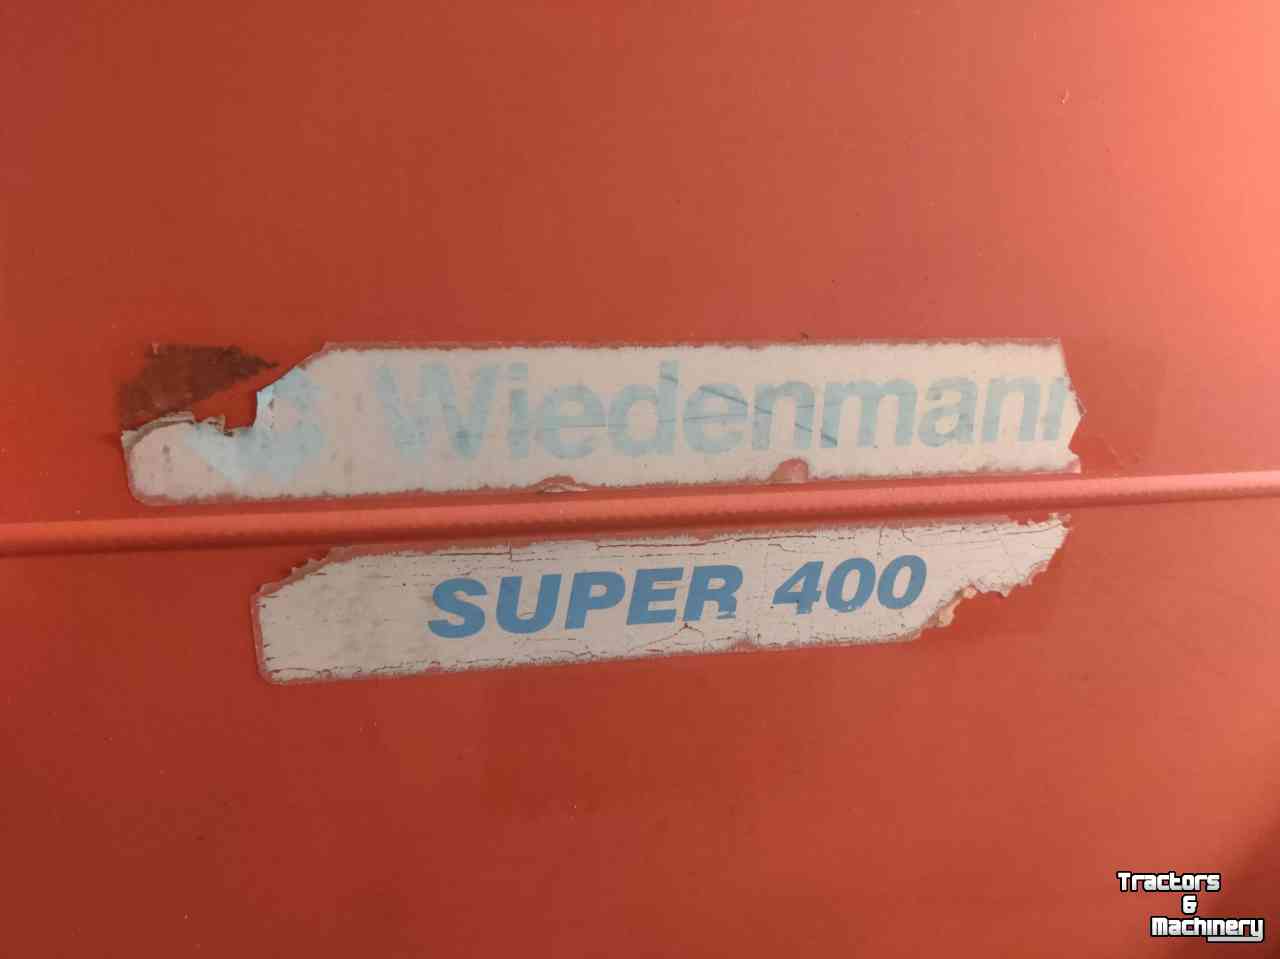 Combinaison faucheuse-aspirateur Wiedenmann Super 400